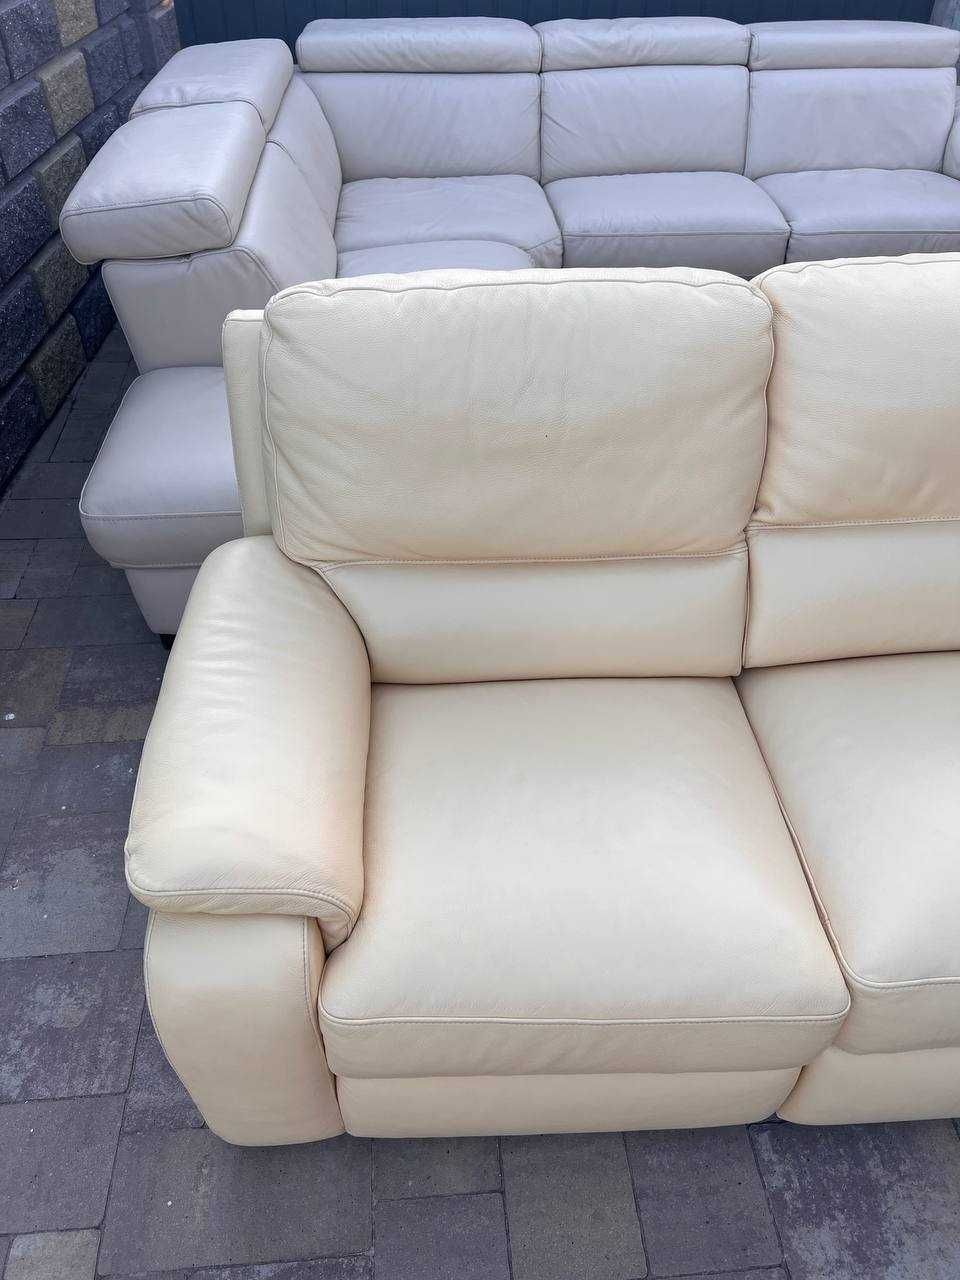 Шкіряний диван , куток , кожаний диван релакс модерн з ЄВРОПИ